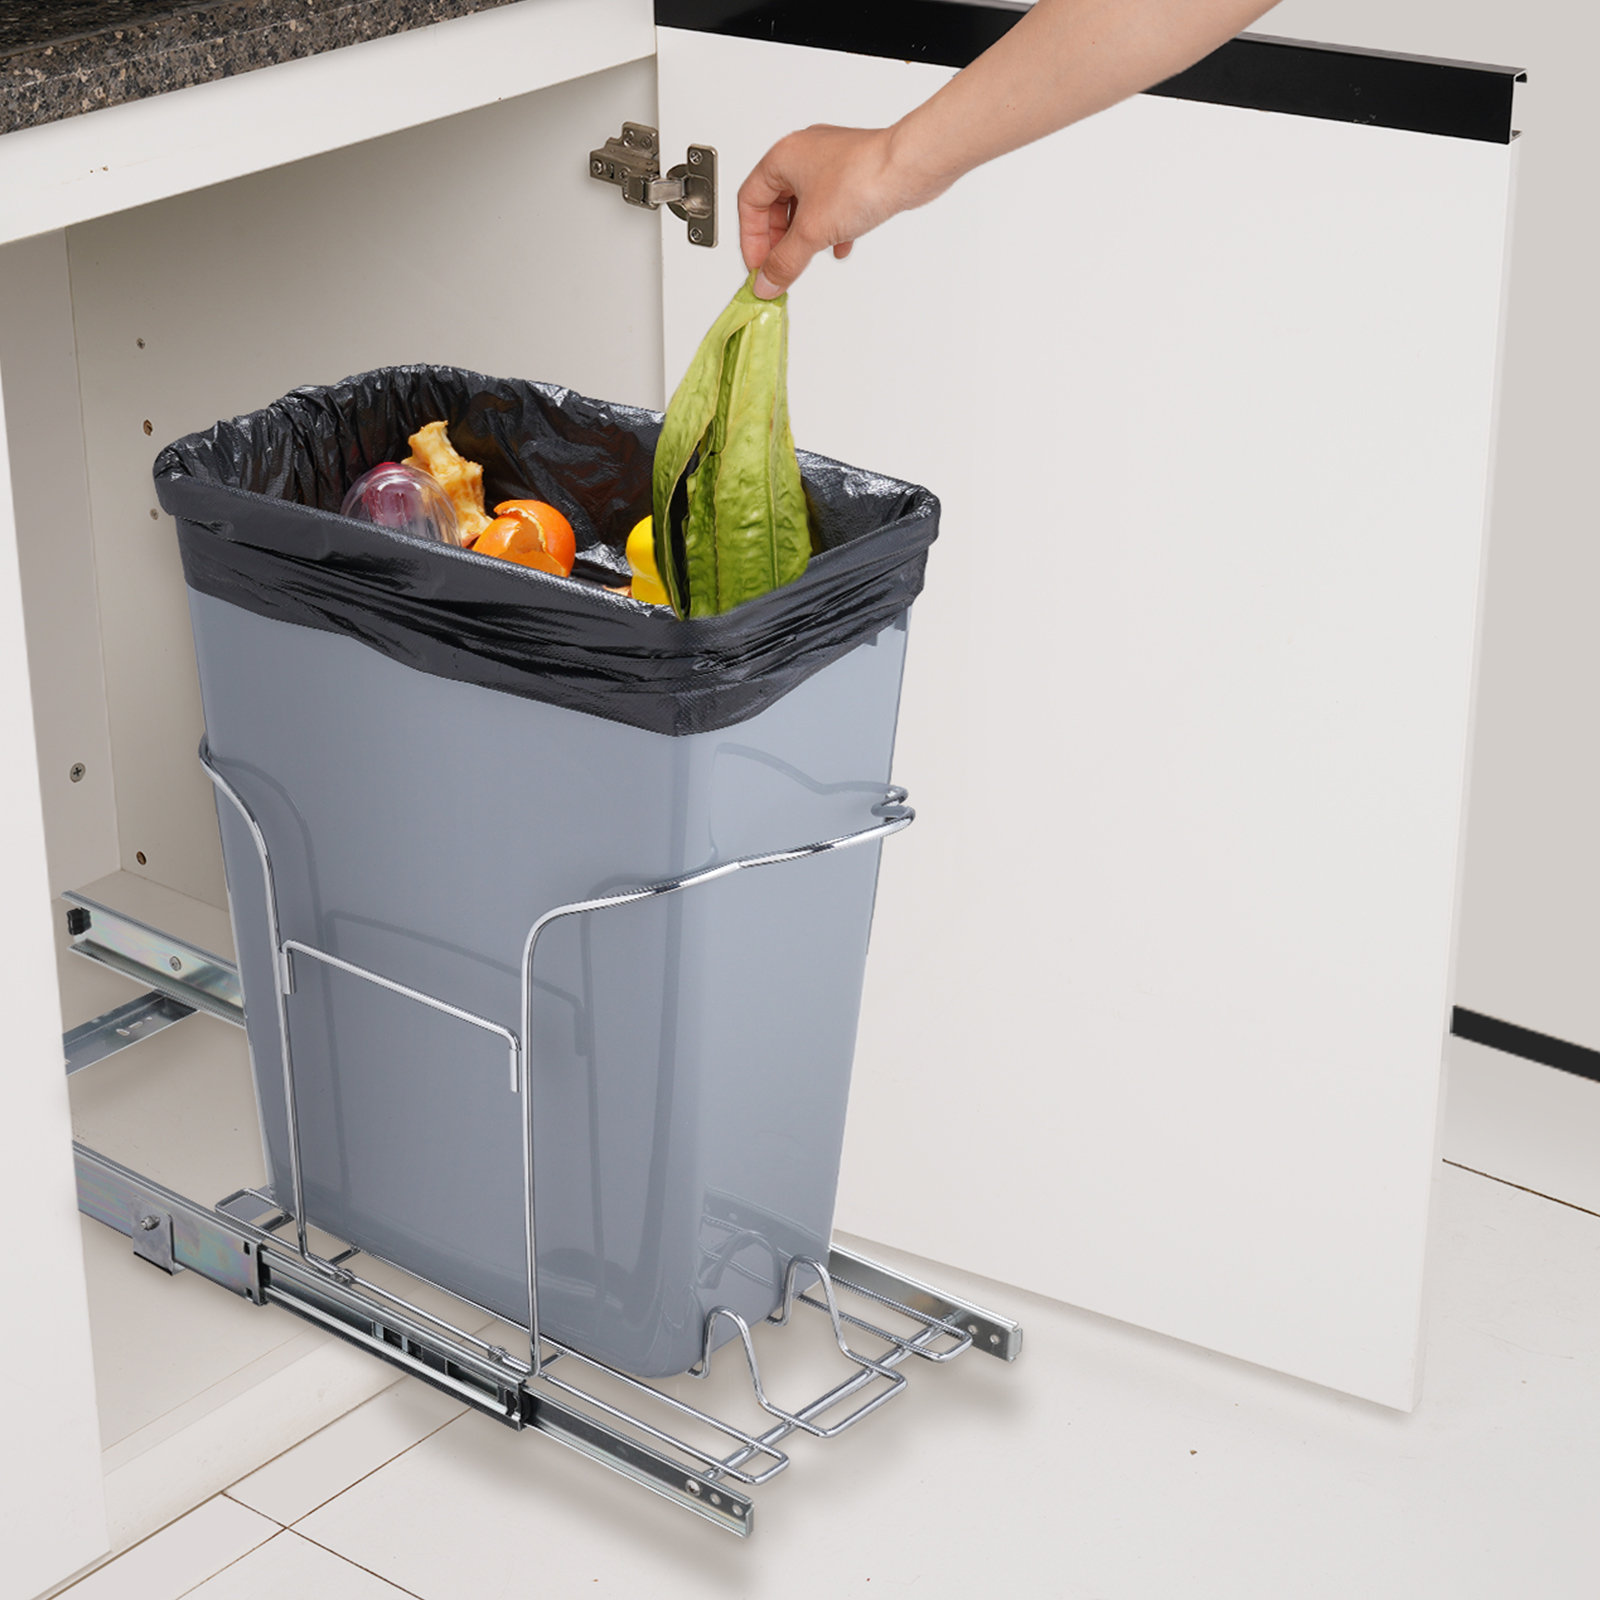 https://assets.wfcdn.com/im/21099242/compr-r85/2520/252047989/vevor-pull-out-trash-can-29l-single-bin-under-mount-kitchen-waste-container-with-slide-handlekit.jpg